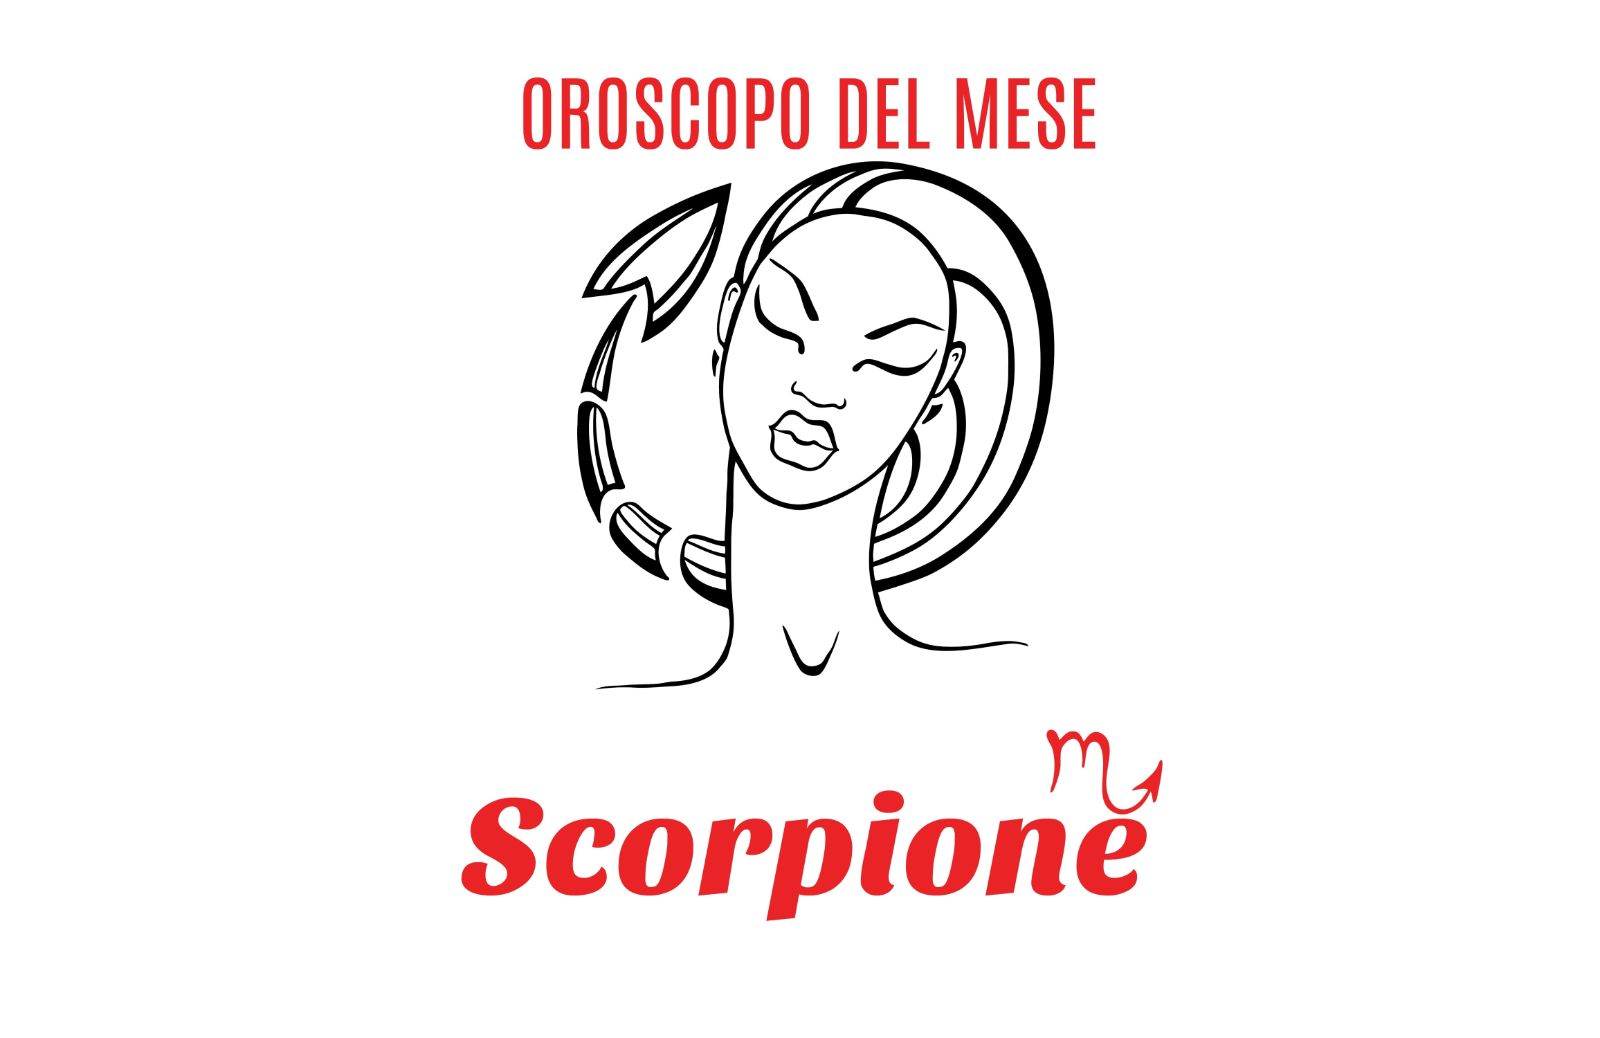 Oroscopo del mese: Scorpione - giugno 2018